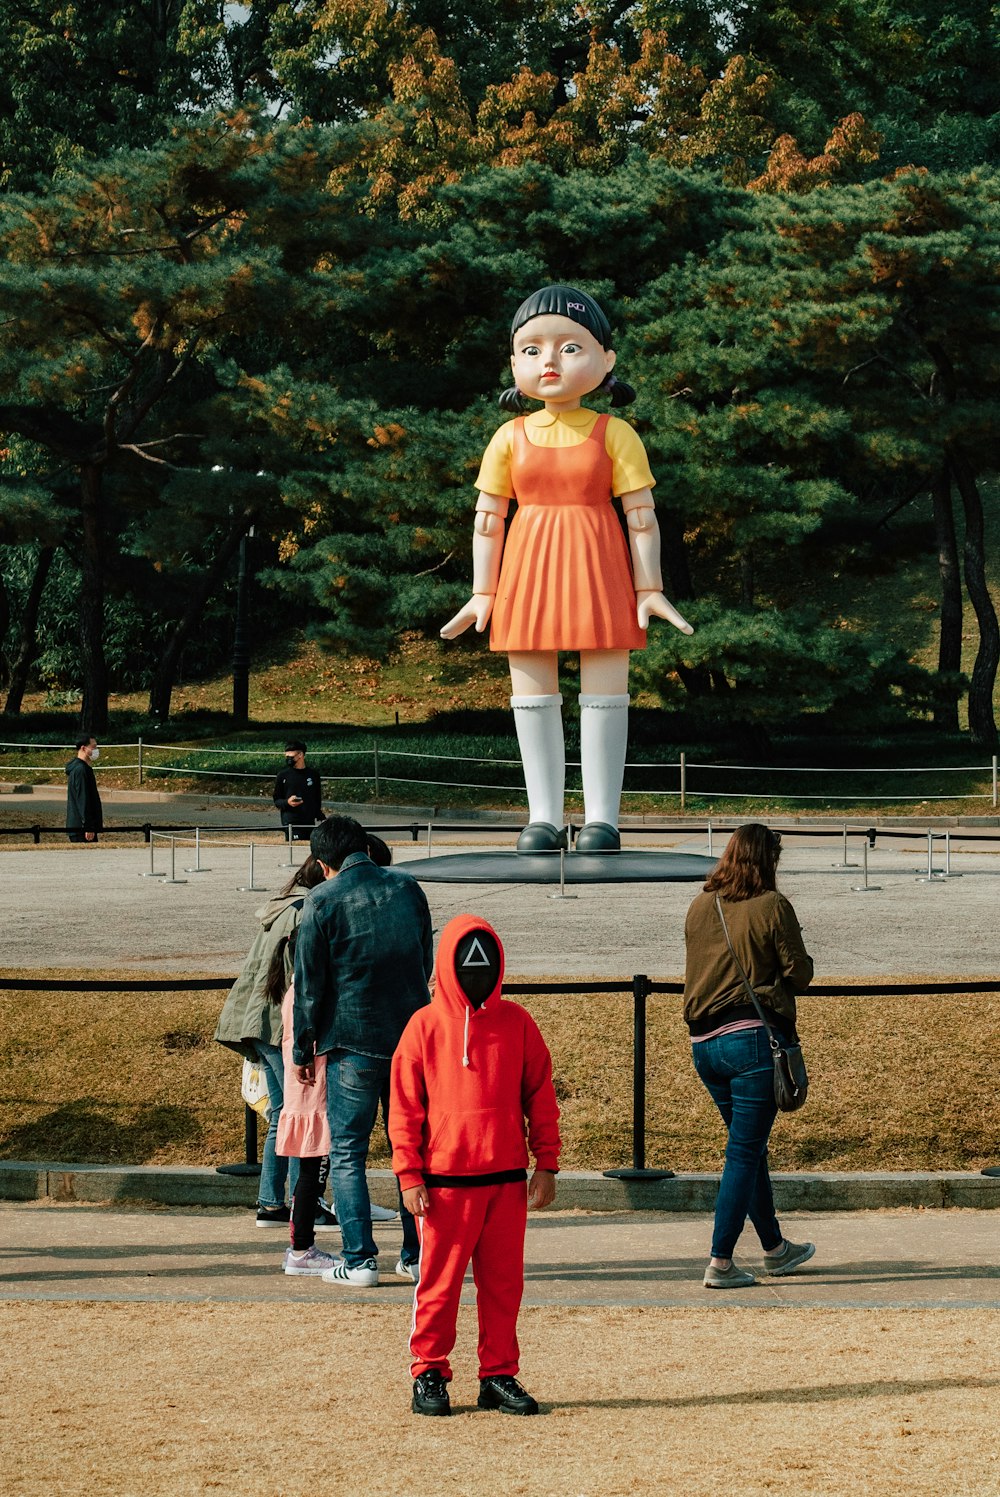 eine große Statue einer Frau in einem orangefarbenen Kleid